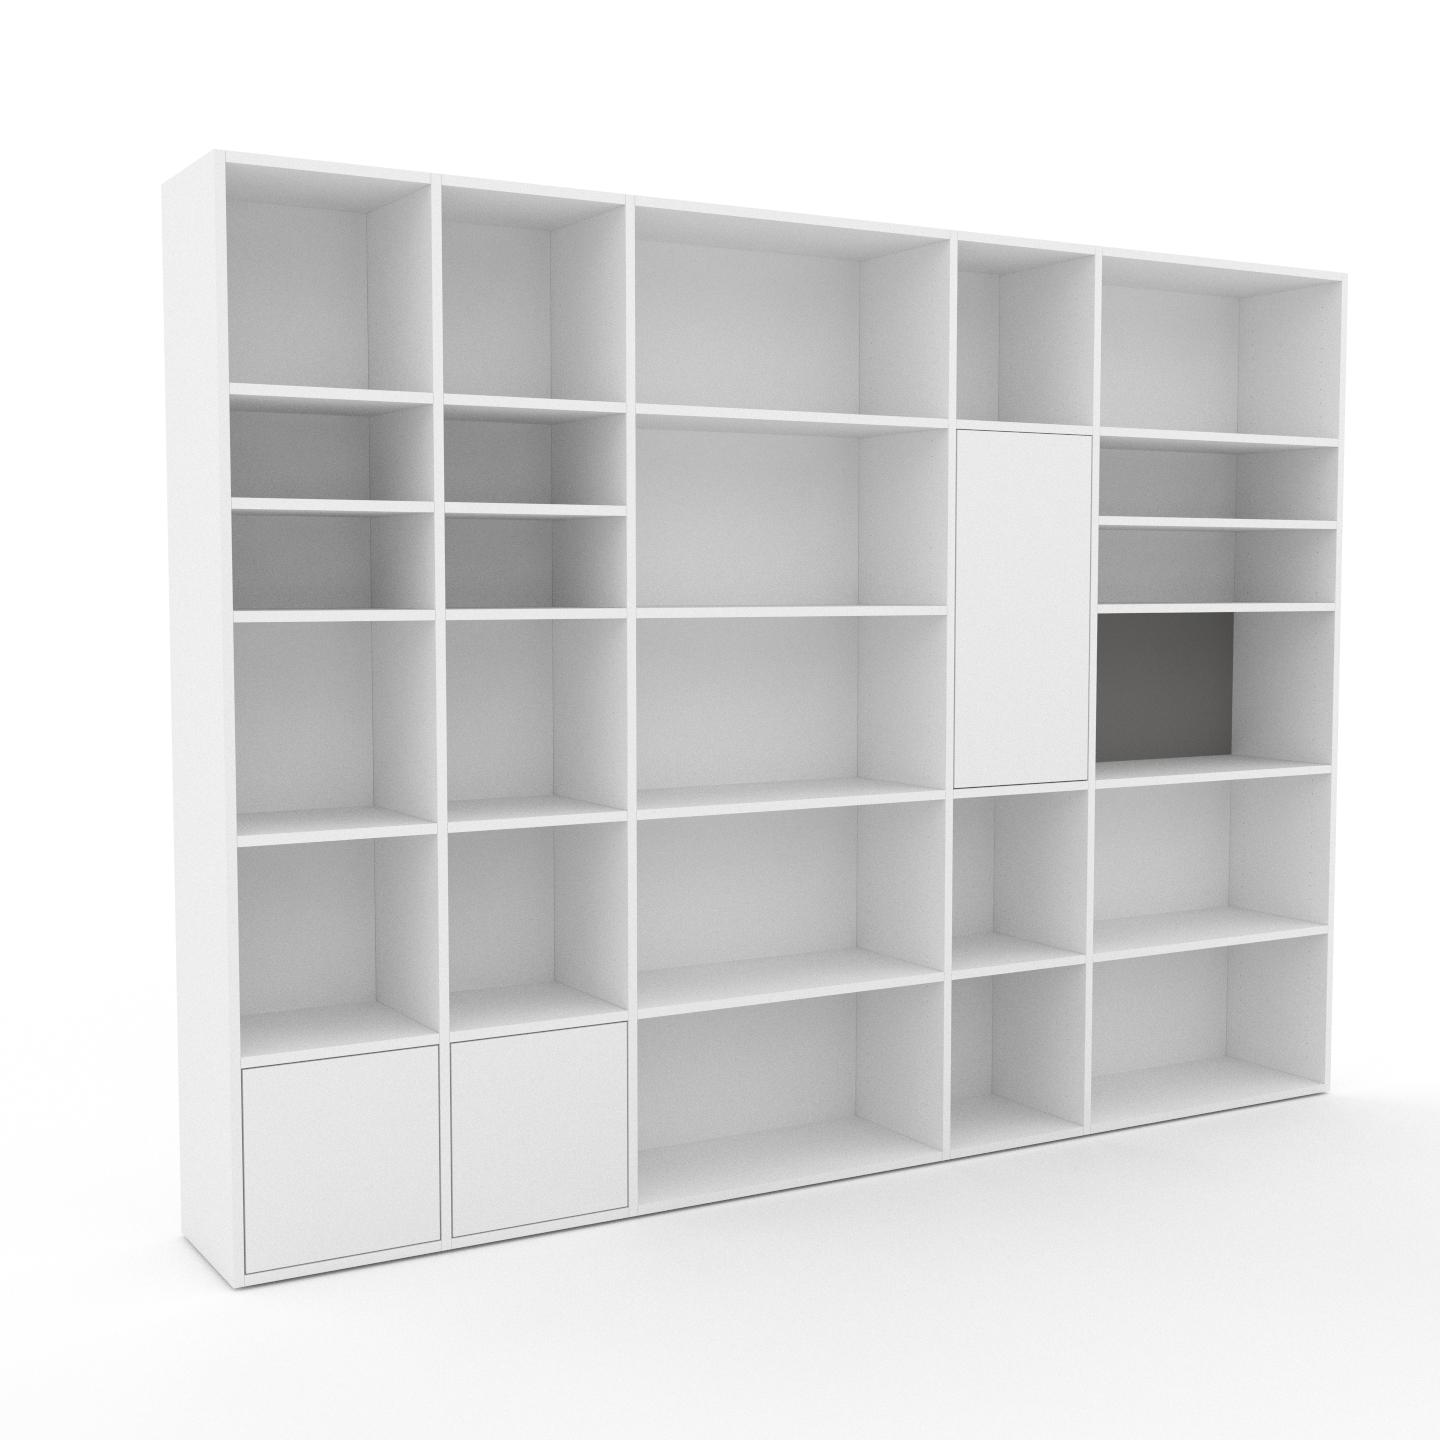 MYCS Bücherregal Weiß - Modernes Regal für Bücher: Türen in Weiß - 267 x 195 x 35 cm, Individuell konfigurierbar